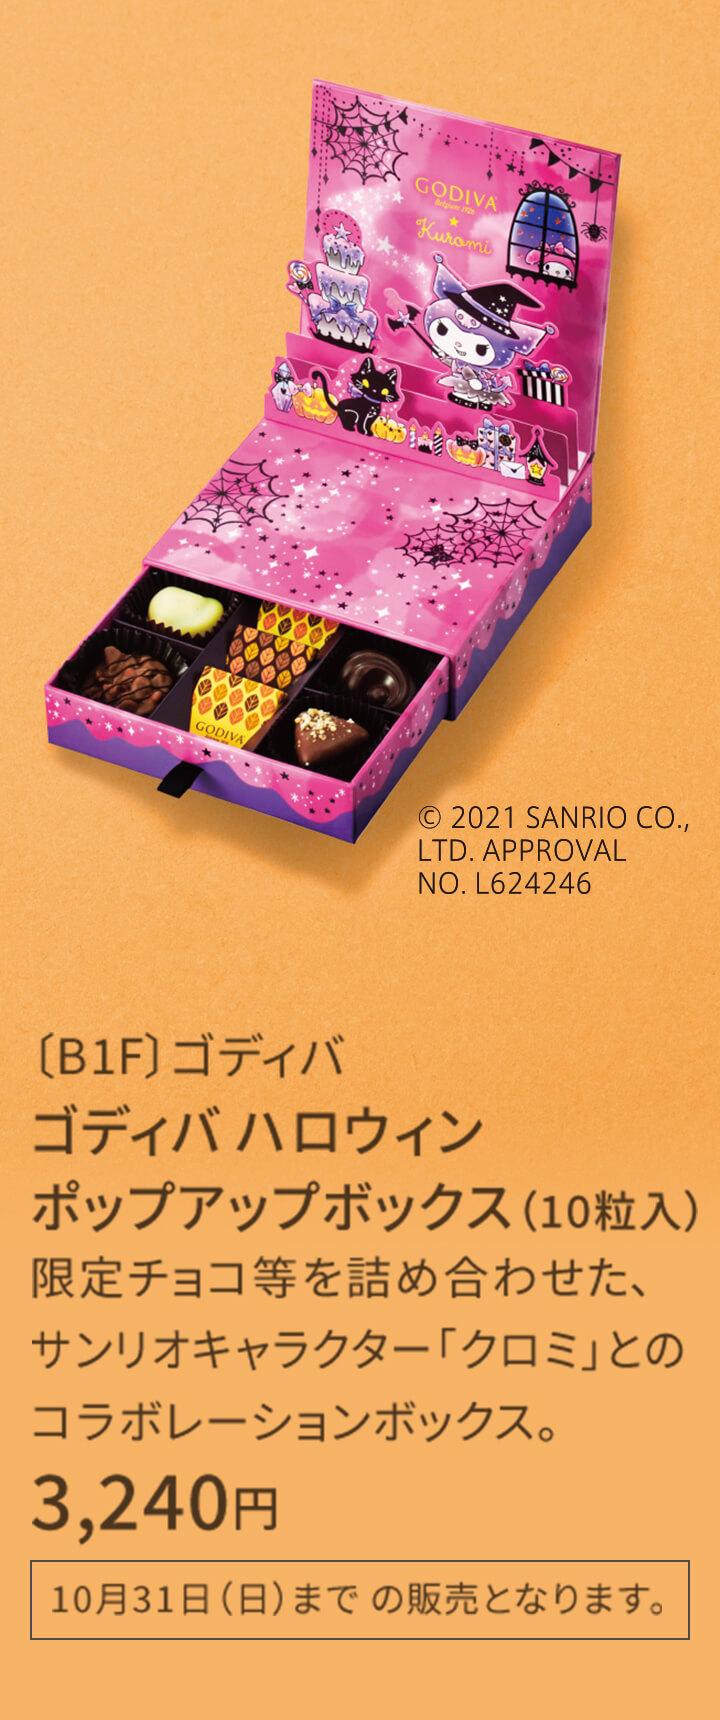 〔B1F〕ゴディバ ゴディバ ハロウィン ポップアップボックス（10粒入） 限定チョコ等を詰め合わせた、サンリオキャラクター「クロミ」とのコラボレーションボックス。 3,240円 ※なくなり次第終了 10月31日（日）まで の販売となります。